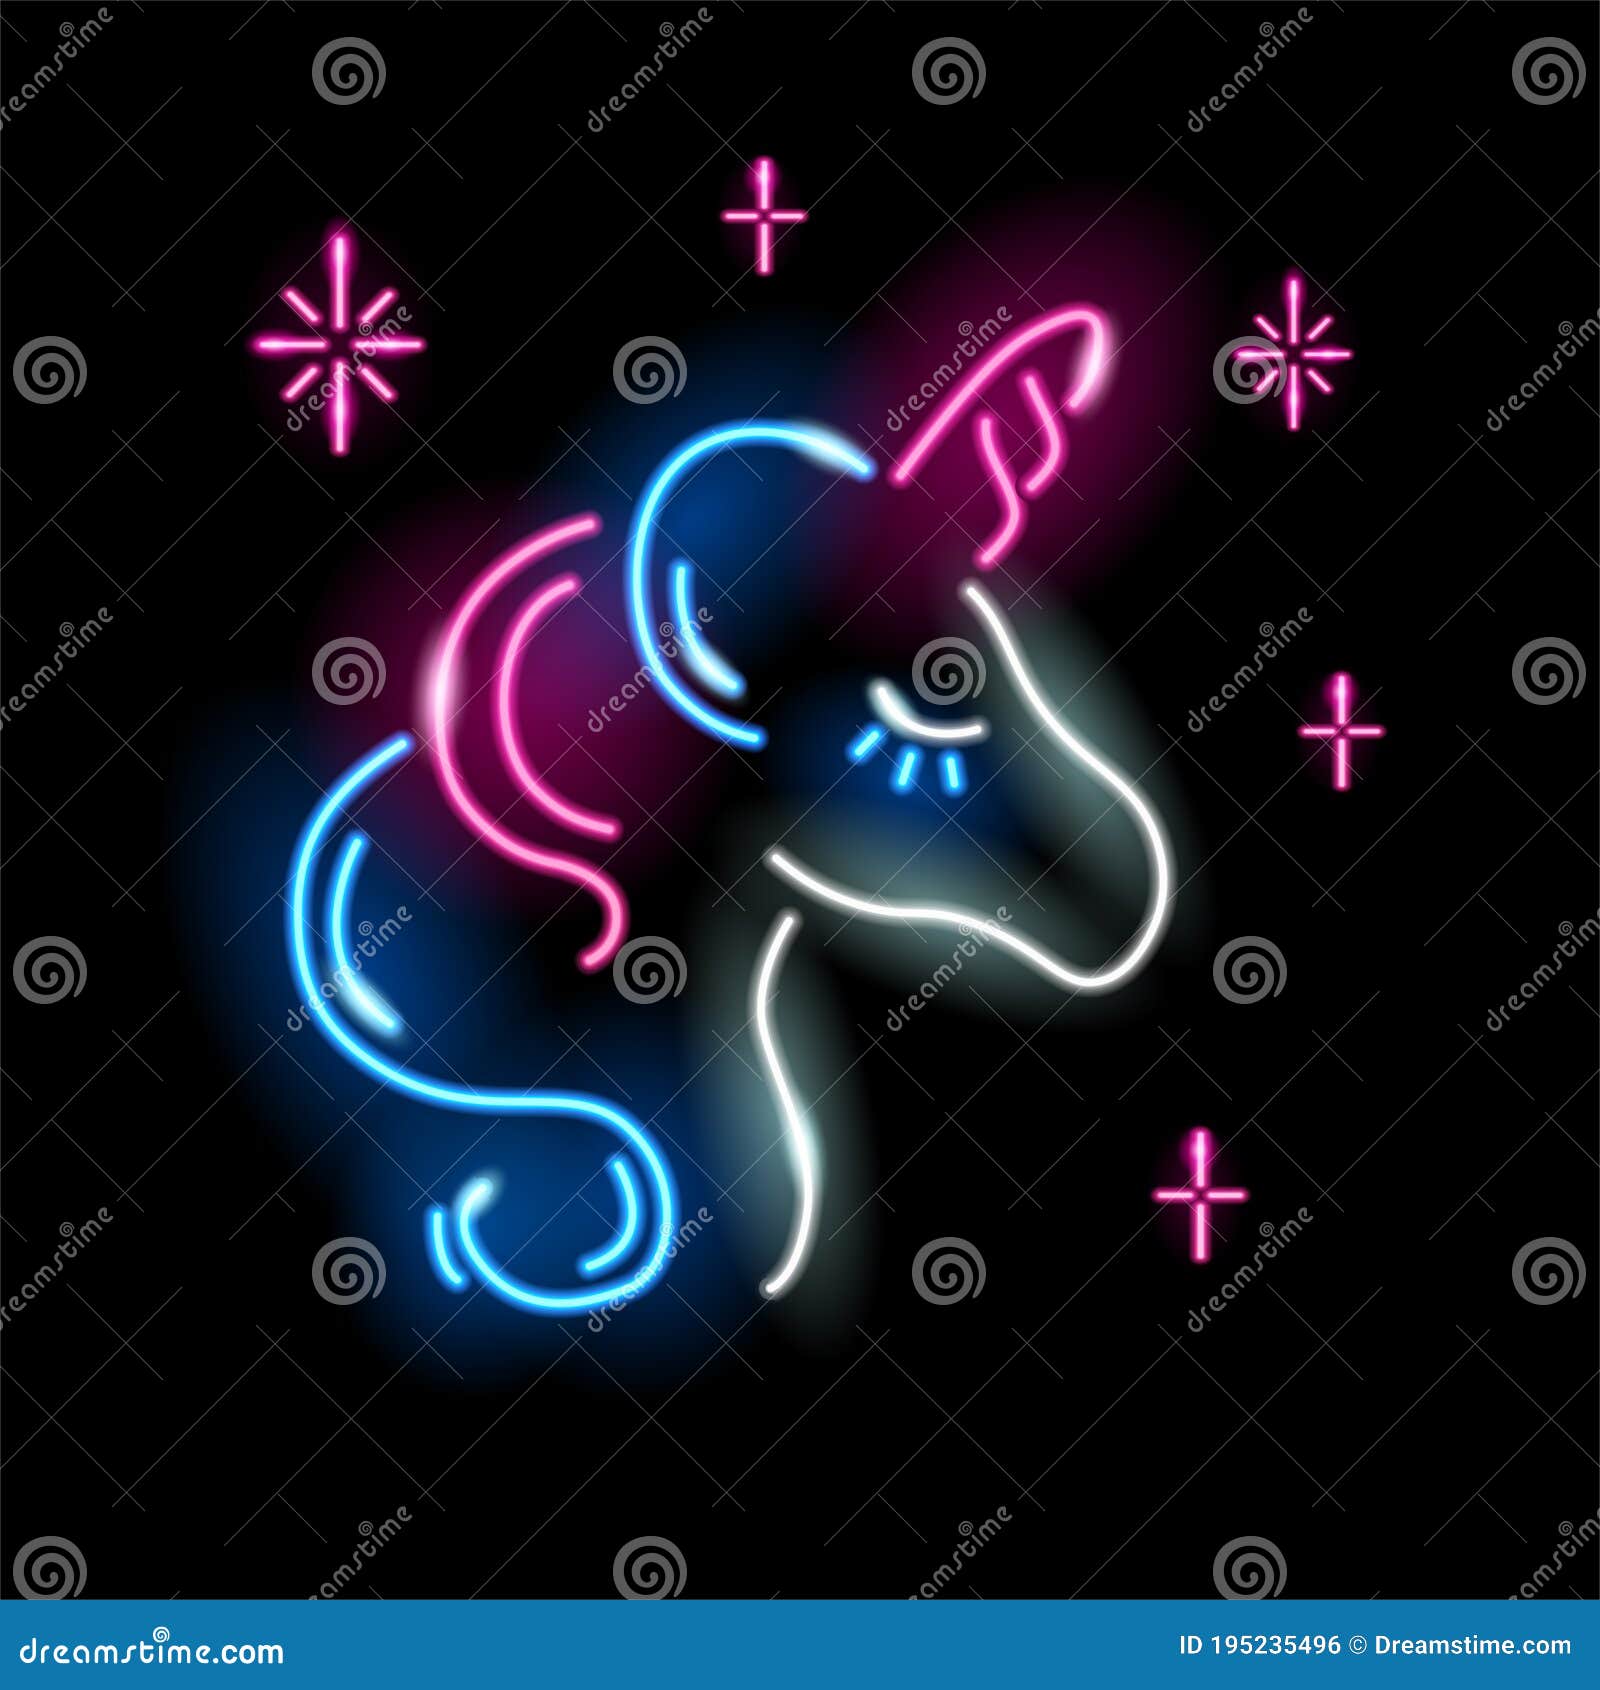 Neon Unicorn Face Icon Isolated on Black Background. Girl, Magic ...